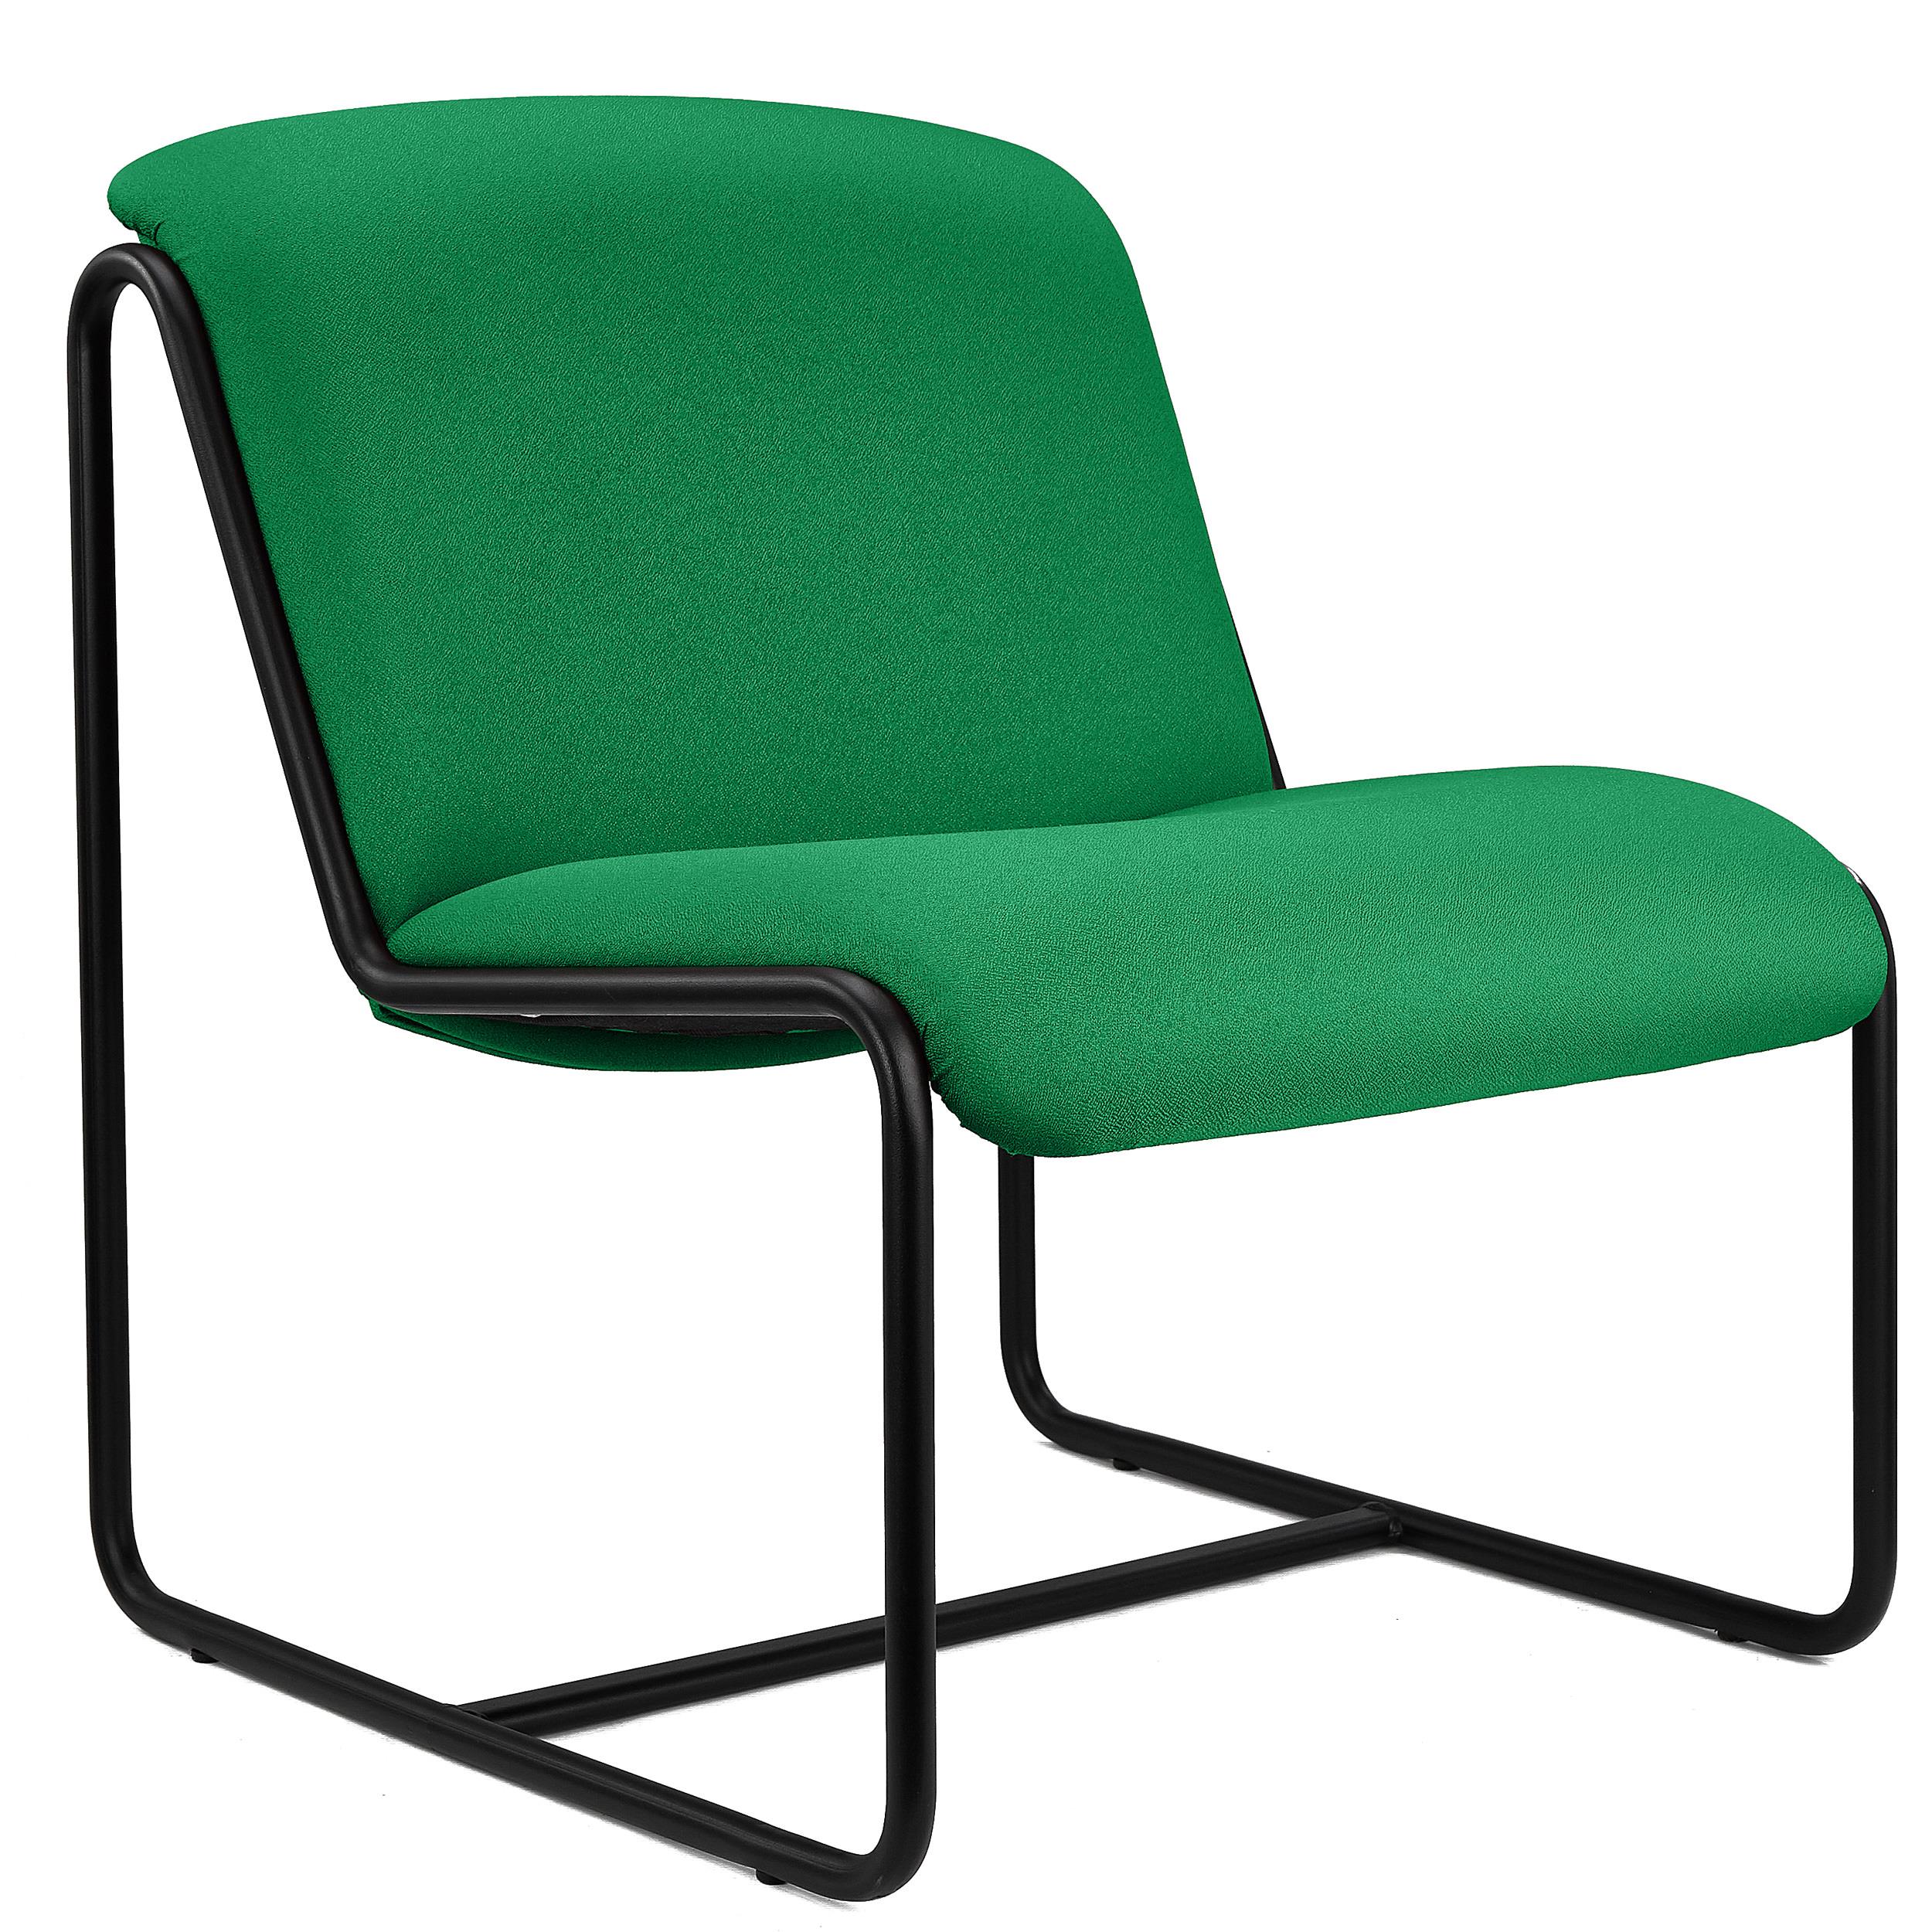 Chaise visiteur LIMA, Design Exclusif, Structure Métallique, en Tissu Vert